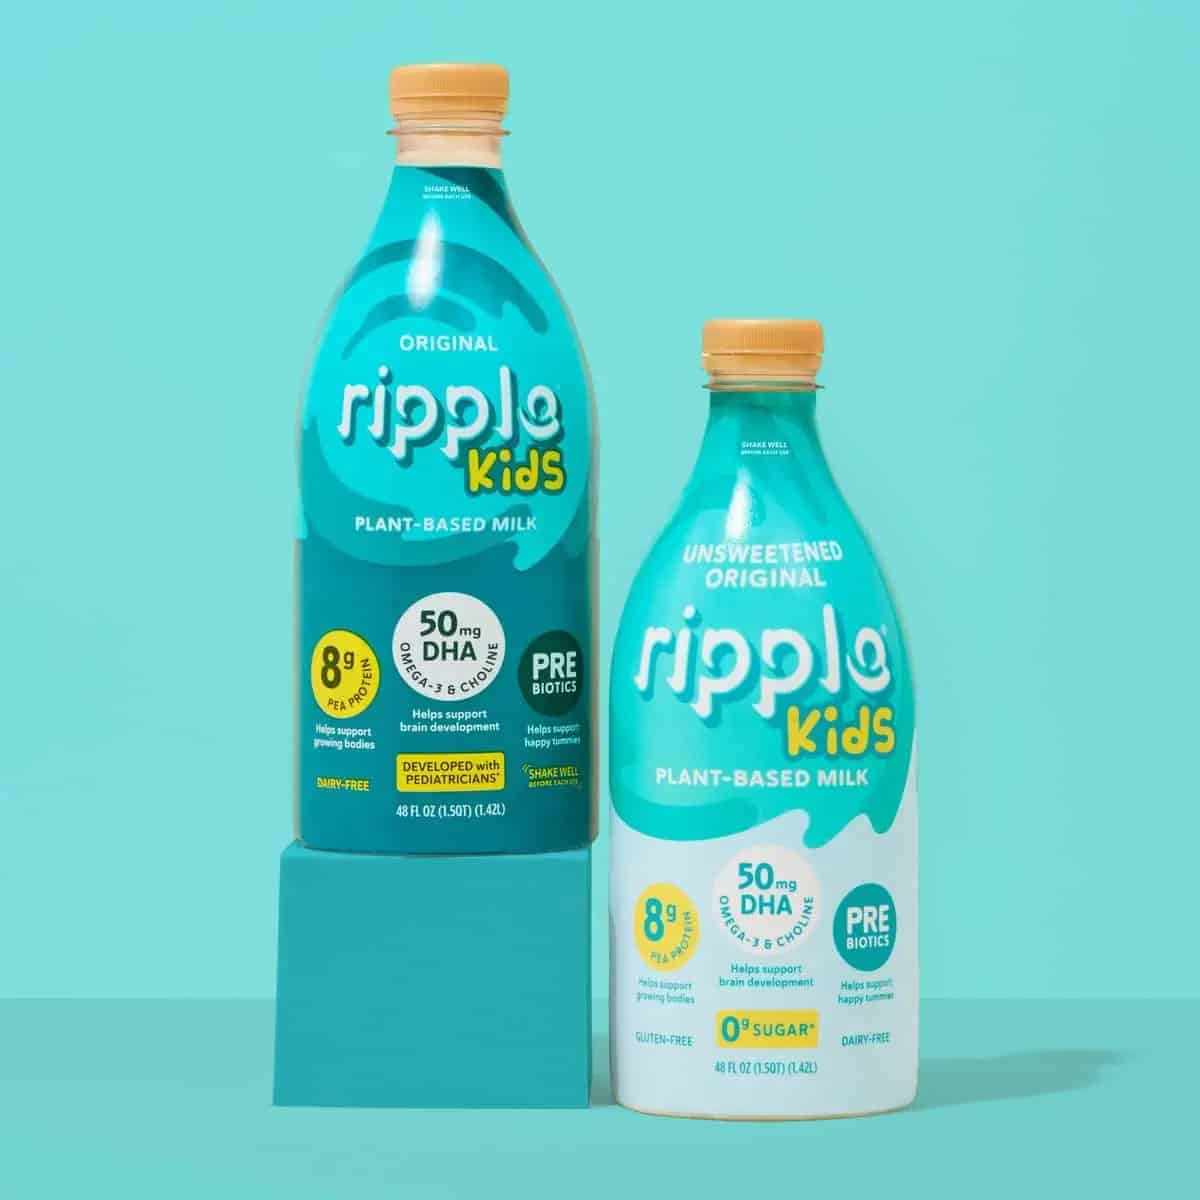 Food Industry News: Ripple Foods introduces Ripple Kids Unsweetened Original Milk